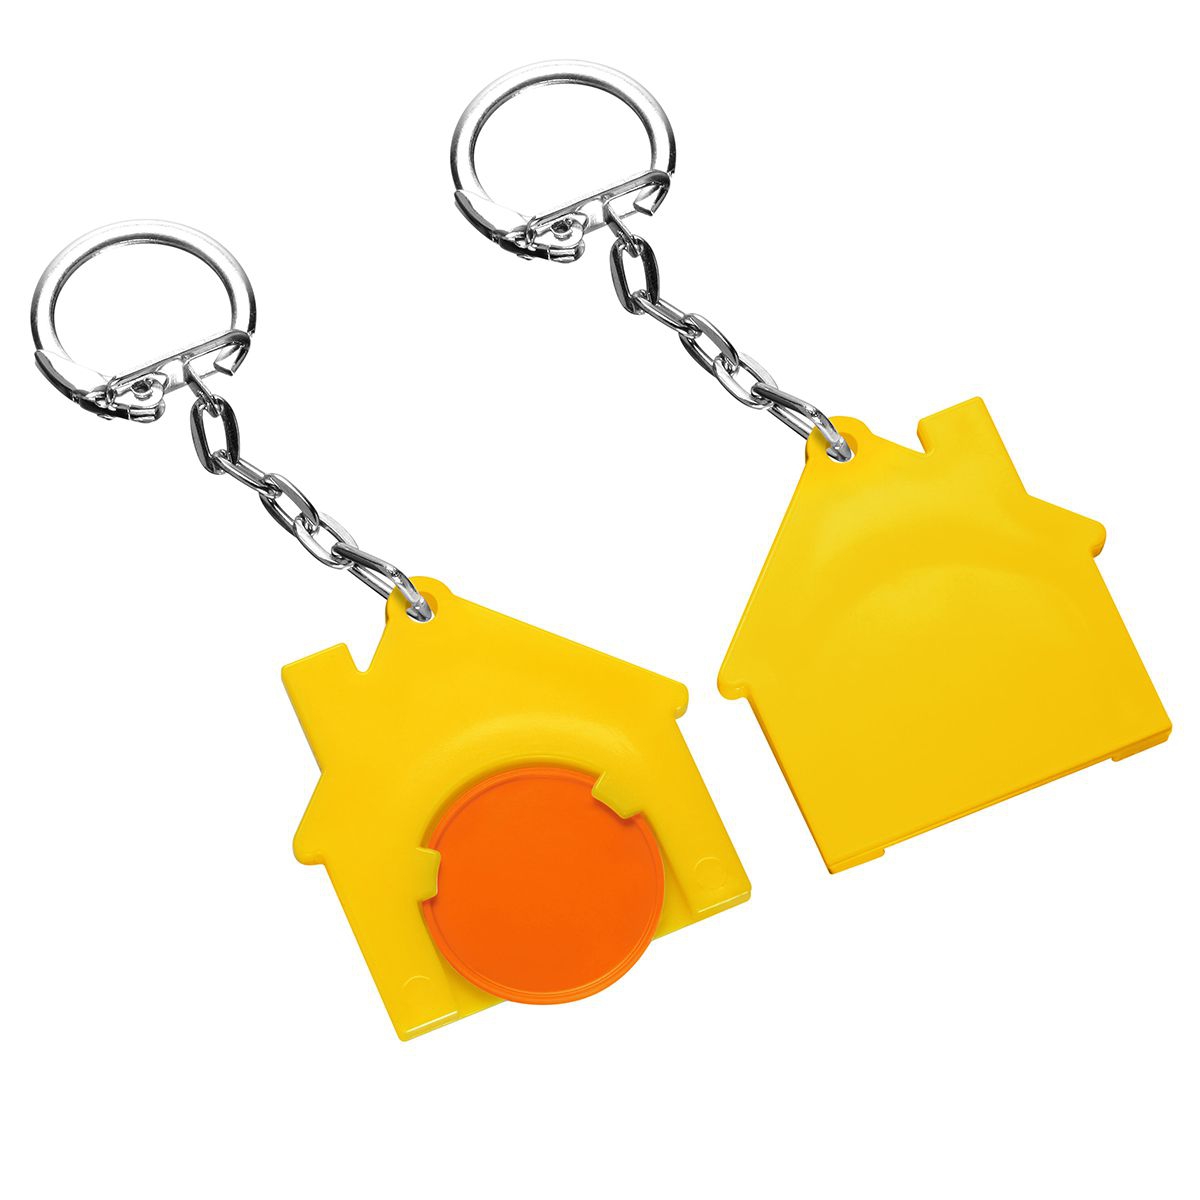 Chiphalter mit 1€-Chip "Haus", orange, gelb